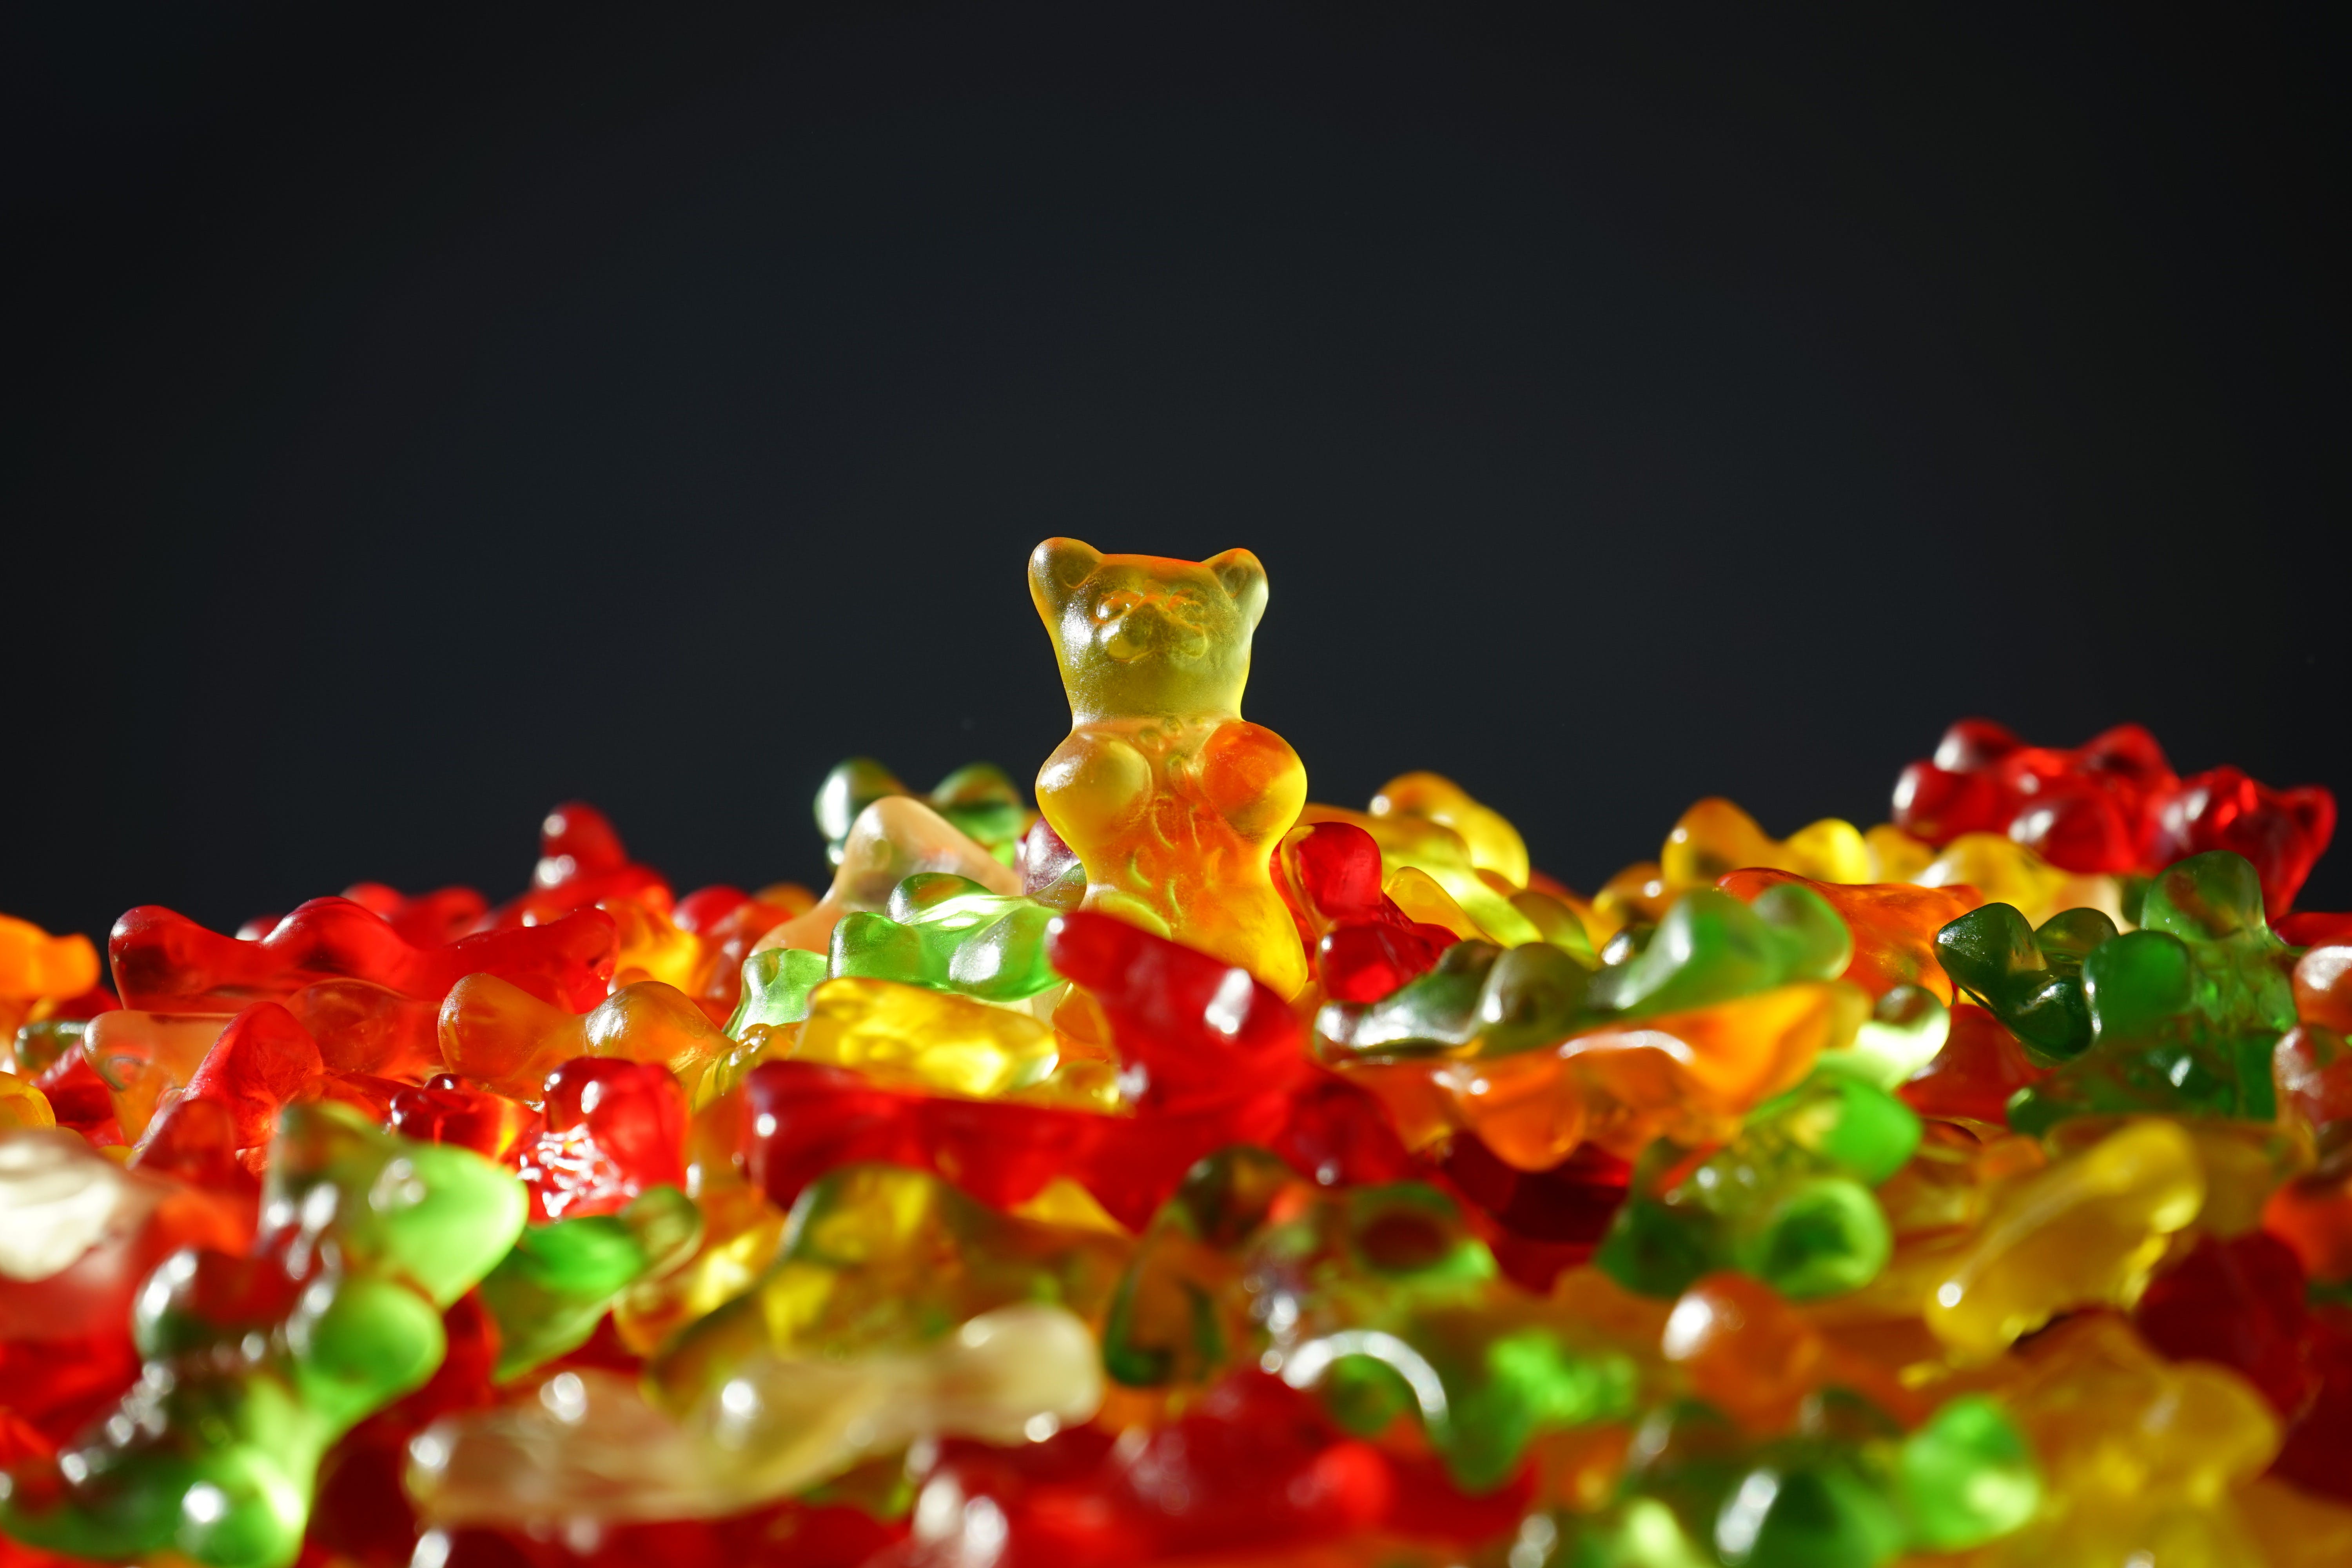 gummy bear candies